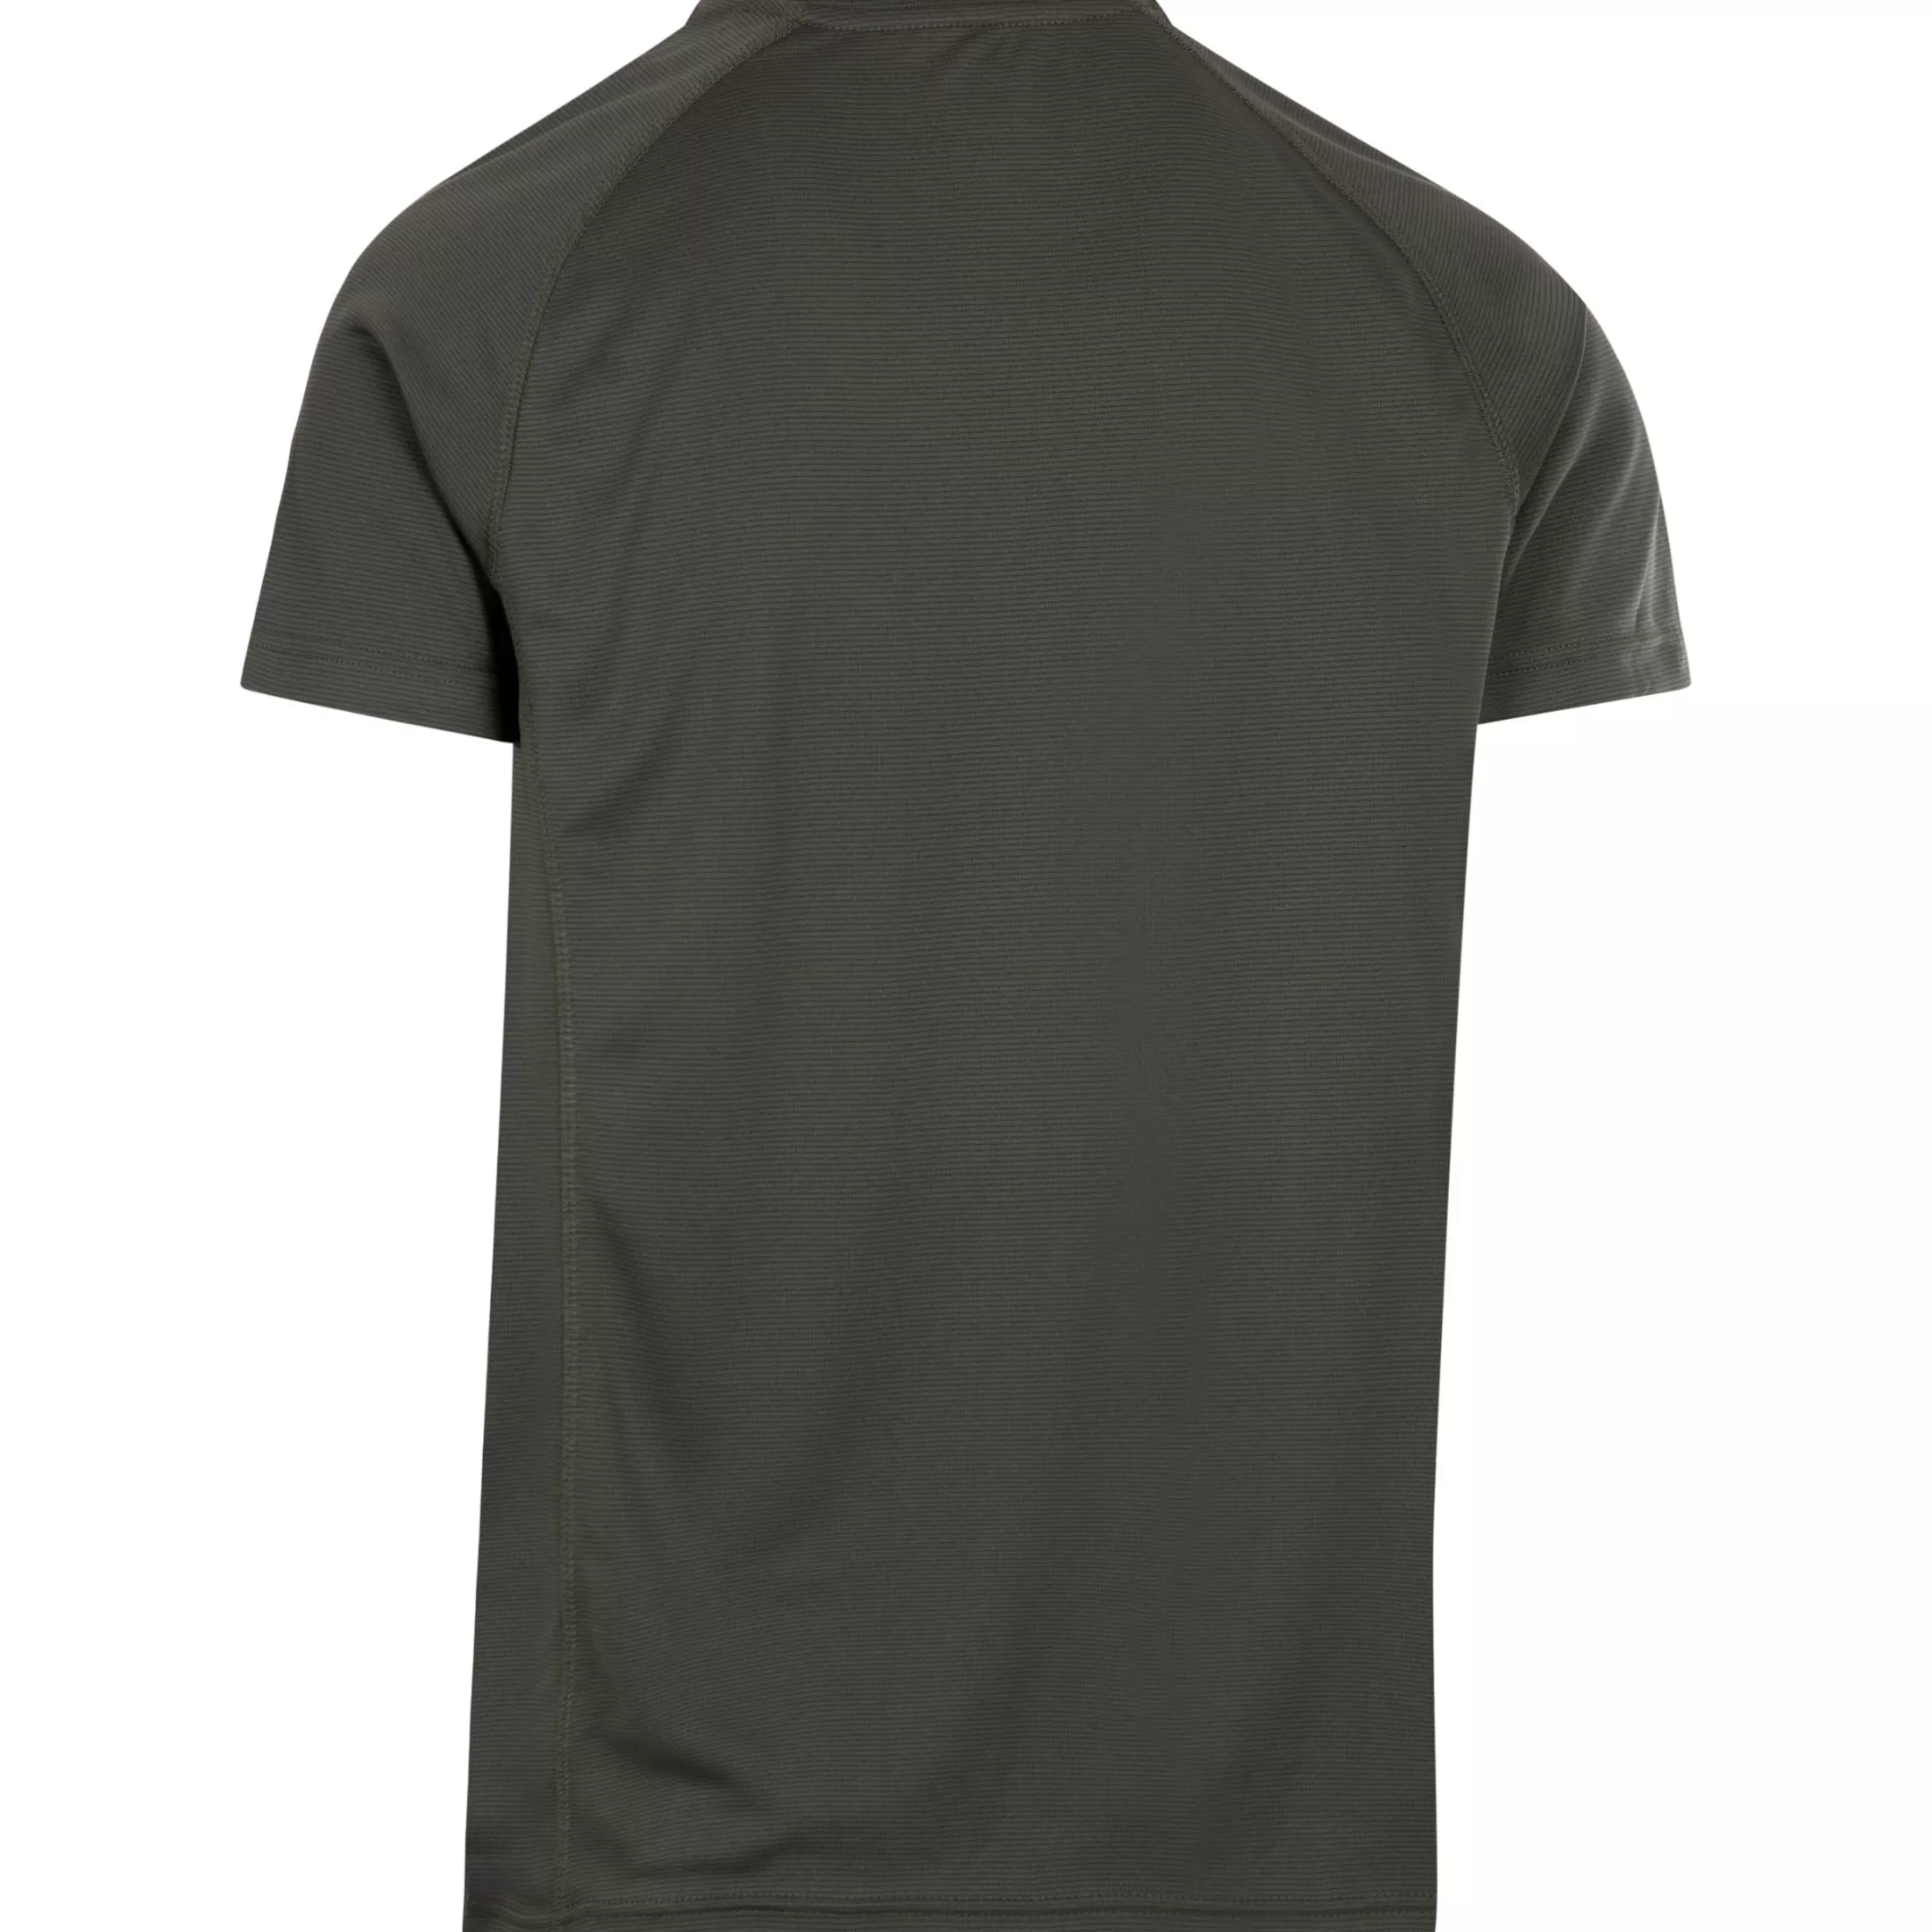 Men's Active T-Shirt TP50 Nils | Trespass Cheap